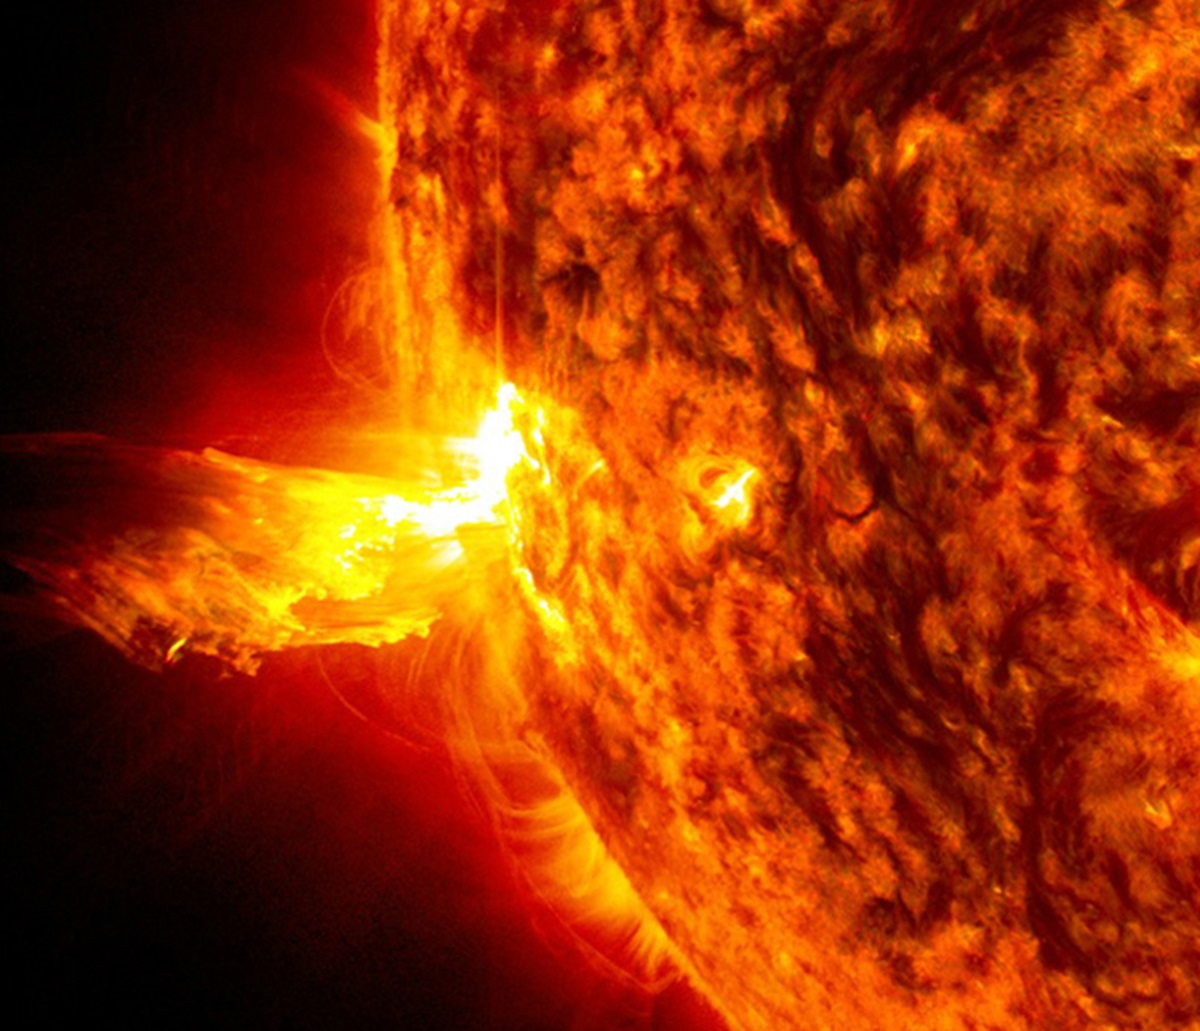 O furtună solară puternică se îndreaptă spre Pământ. Foto: arhivă NASA